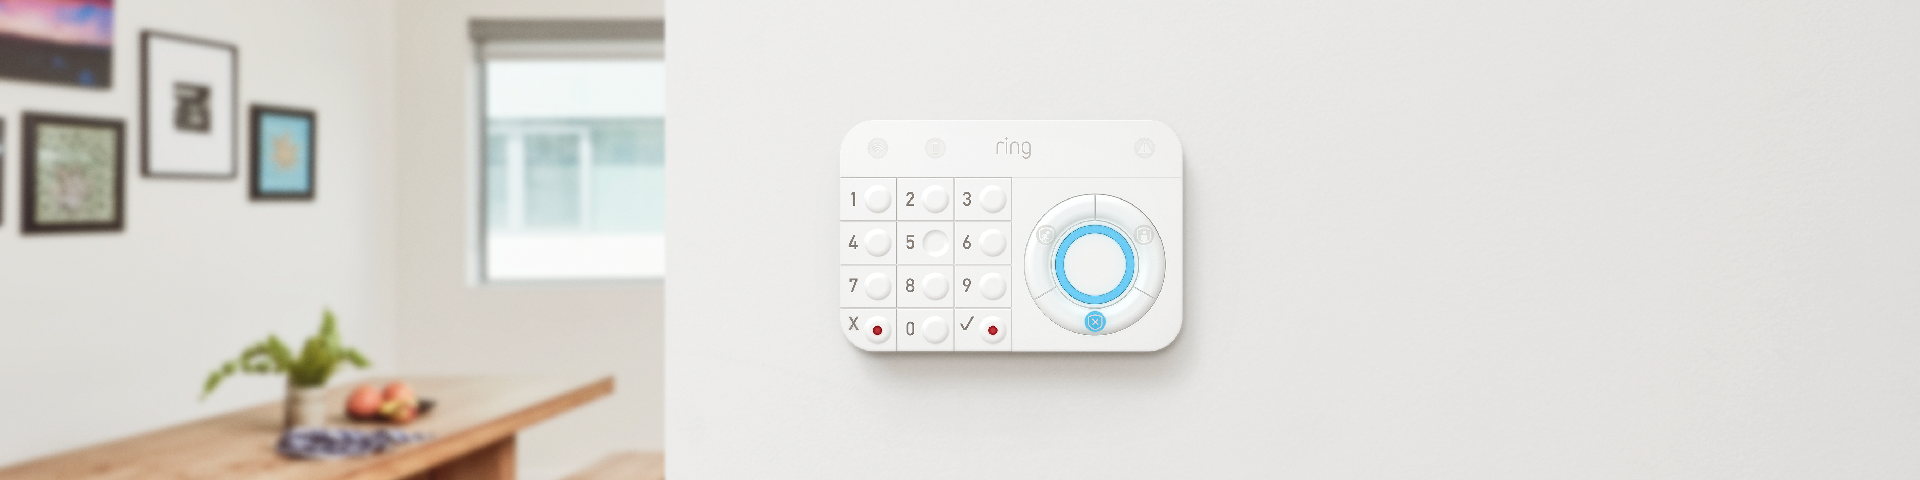 Ring Alarm Keypad 1st generation - YouTube